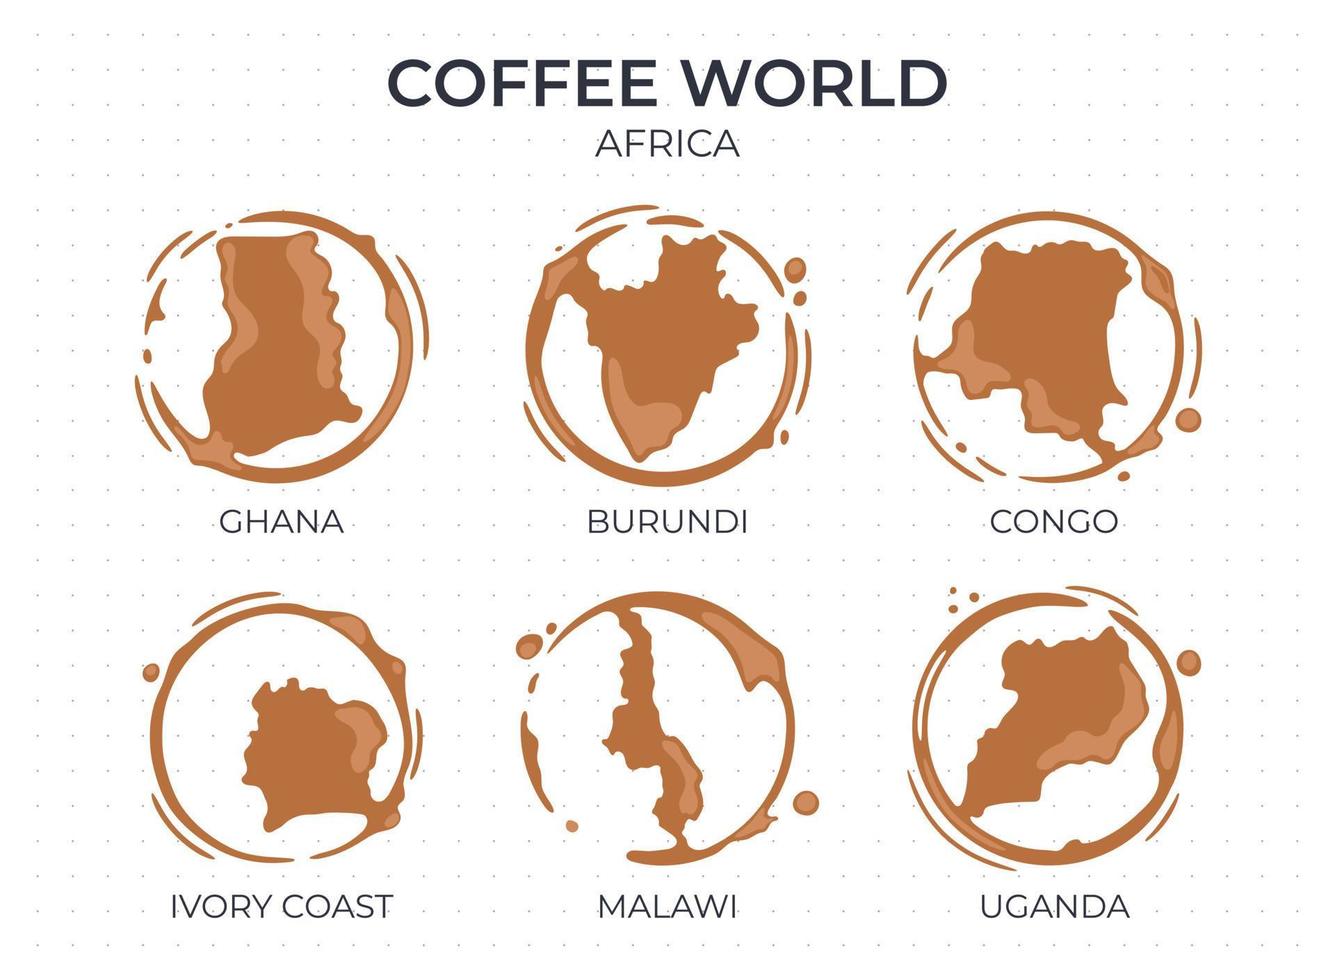 verzameling koffiekopjes ronde vlekken in de vorm van een koffie herkomstlanden, producenten en exporteurs uit afrika. vector druppels en spatten op wit.